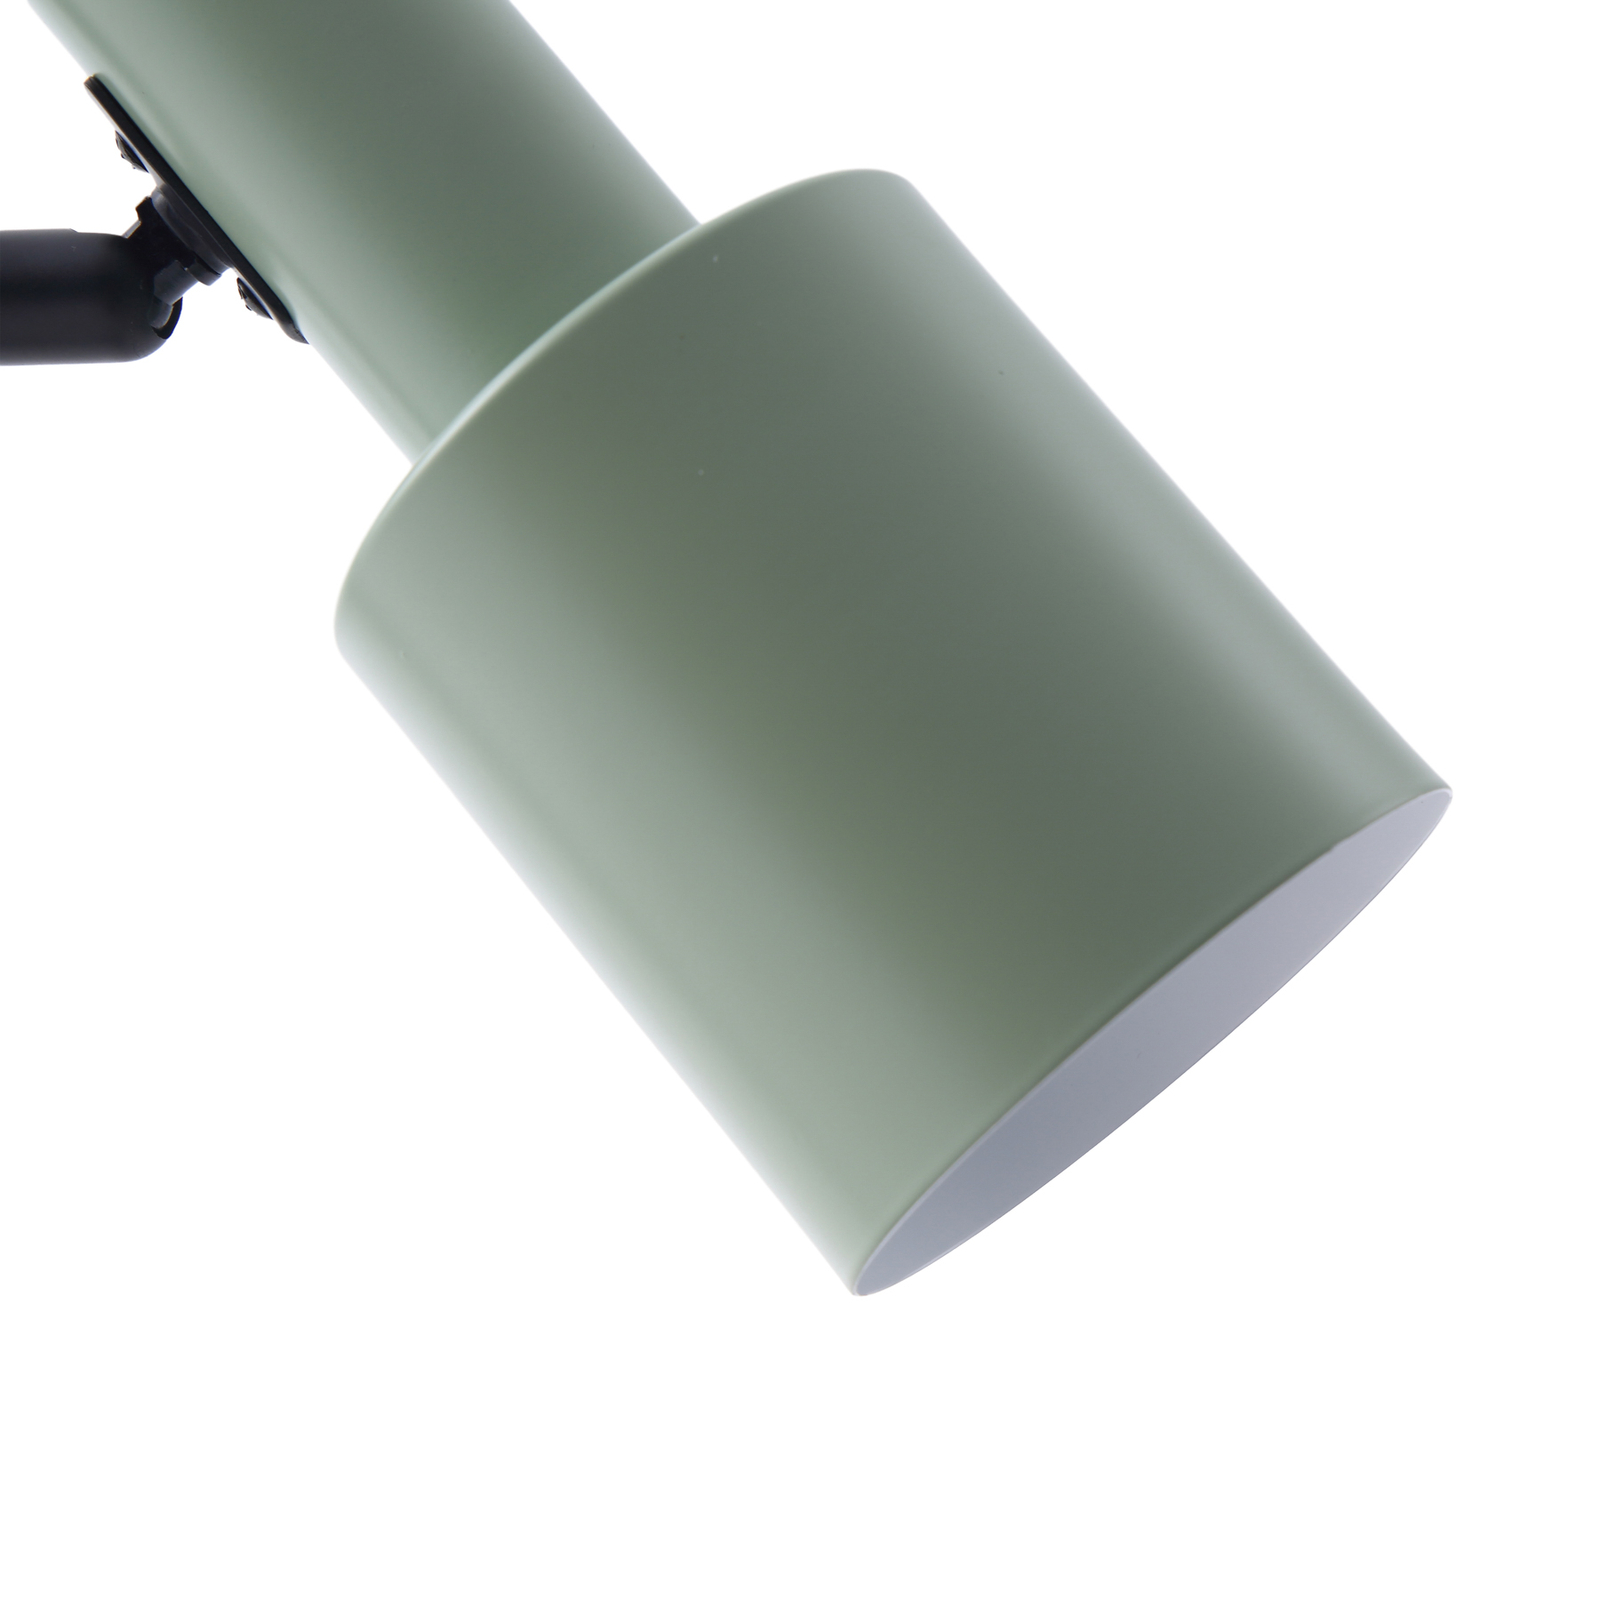 Lindby tafellamp Ovelia, groen/zwart